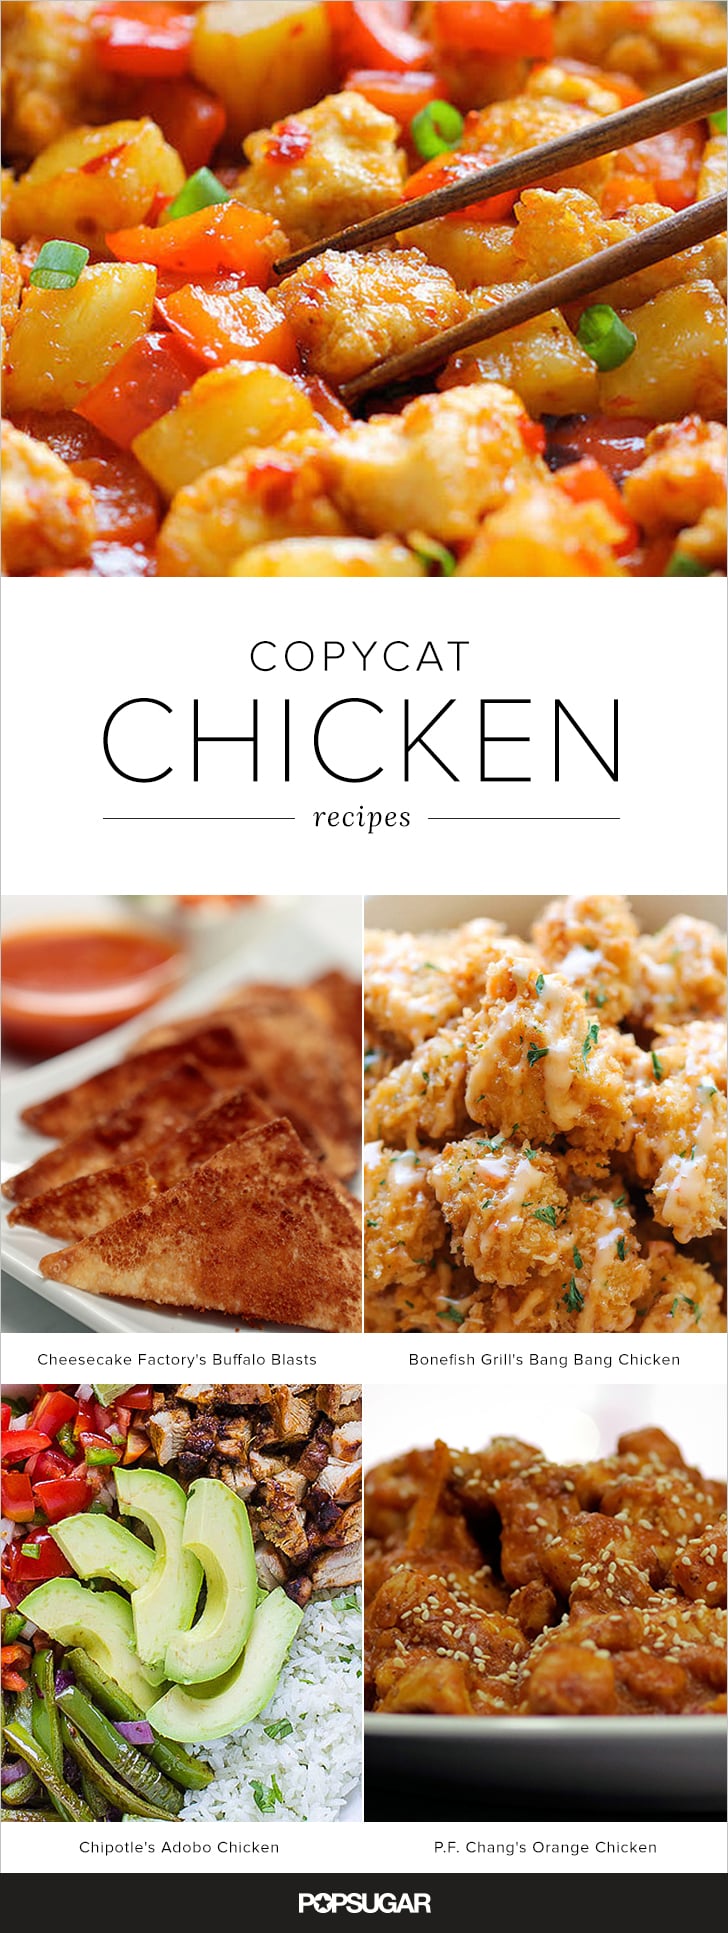 Restaurant Copycat Chicken Recipes